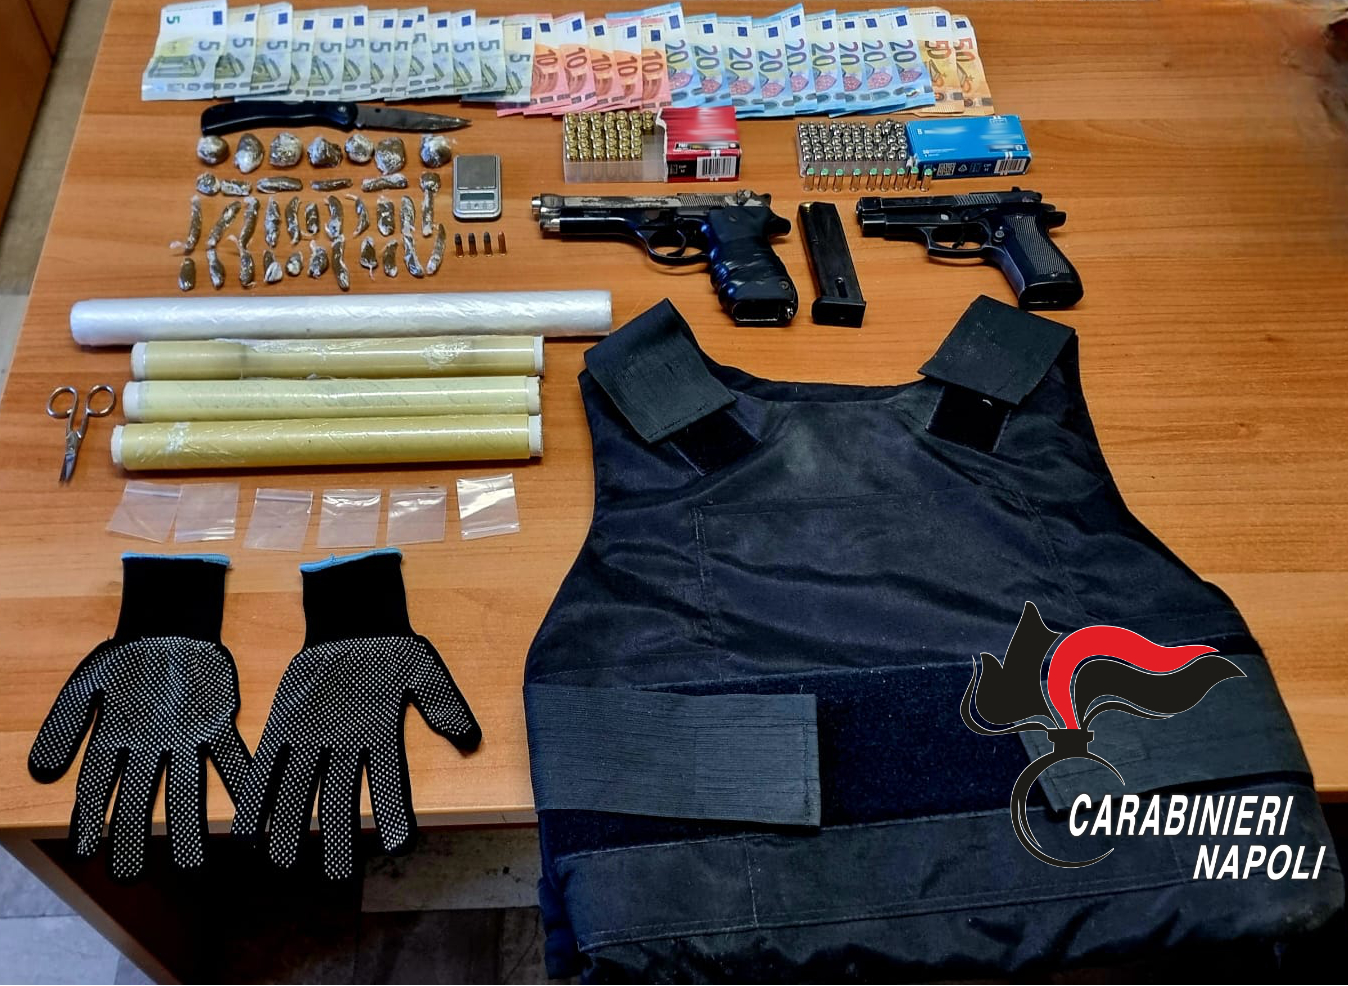 Pomigliano d’Arco: Giubbotto antiproiettile, pistola e droga in un box in via Cantone, 4 gli arrestati